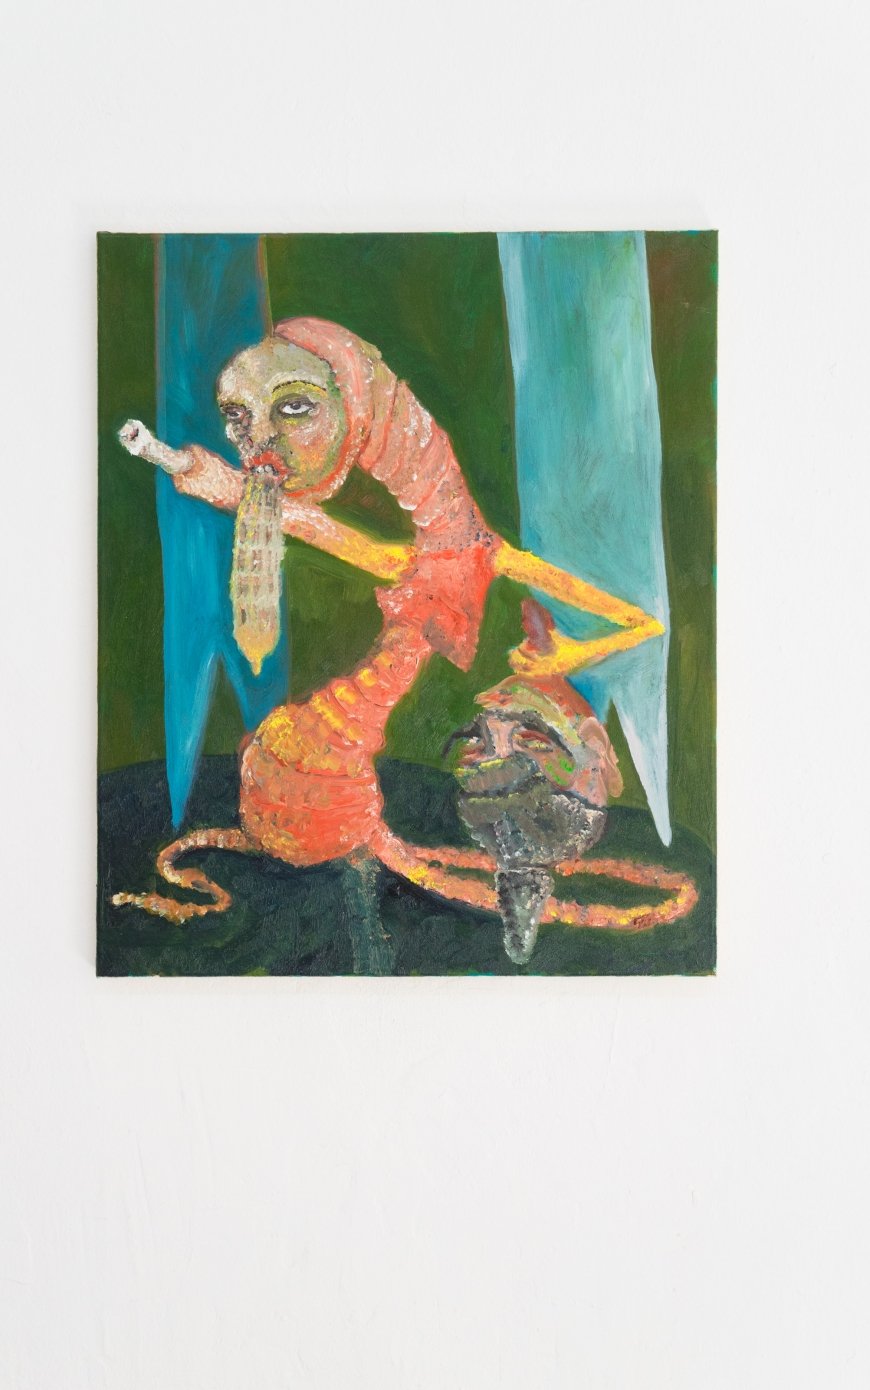 Joseph Geagan, Bone Frau, 2018, Oil on canvas, 60 x 50 cm 